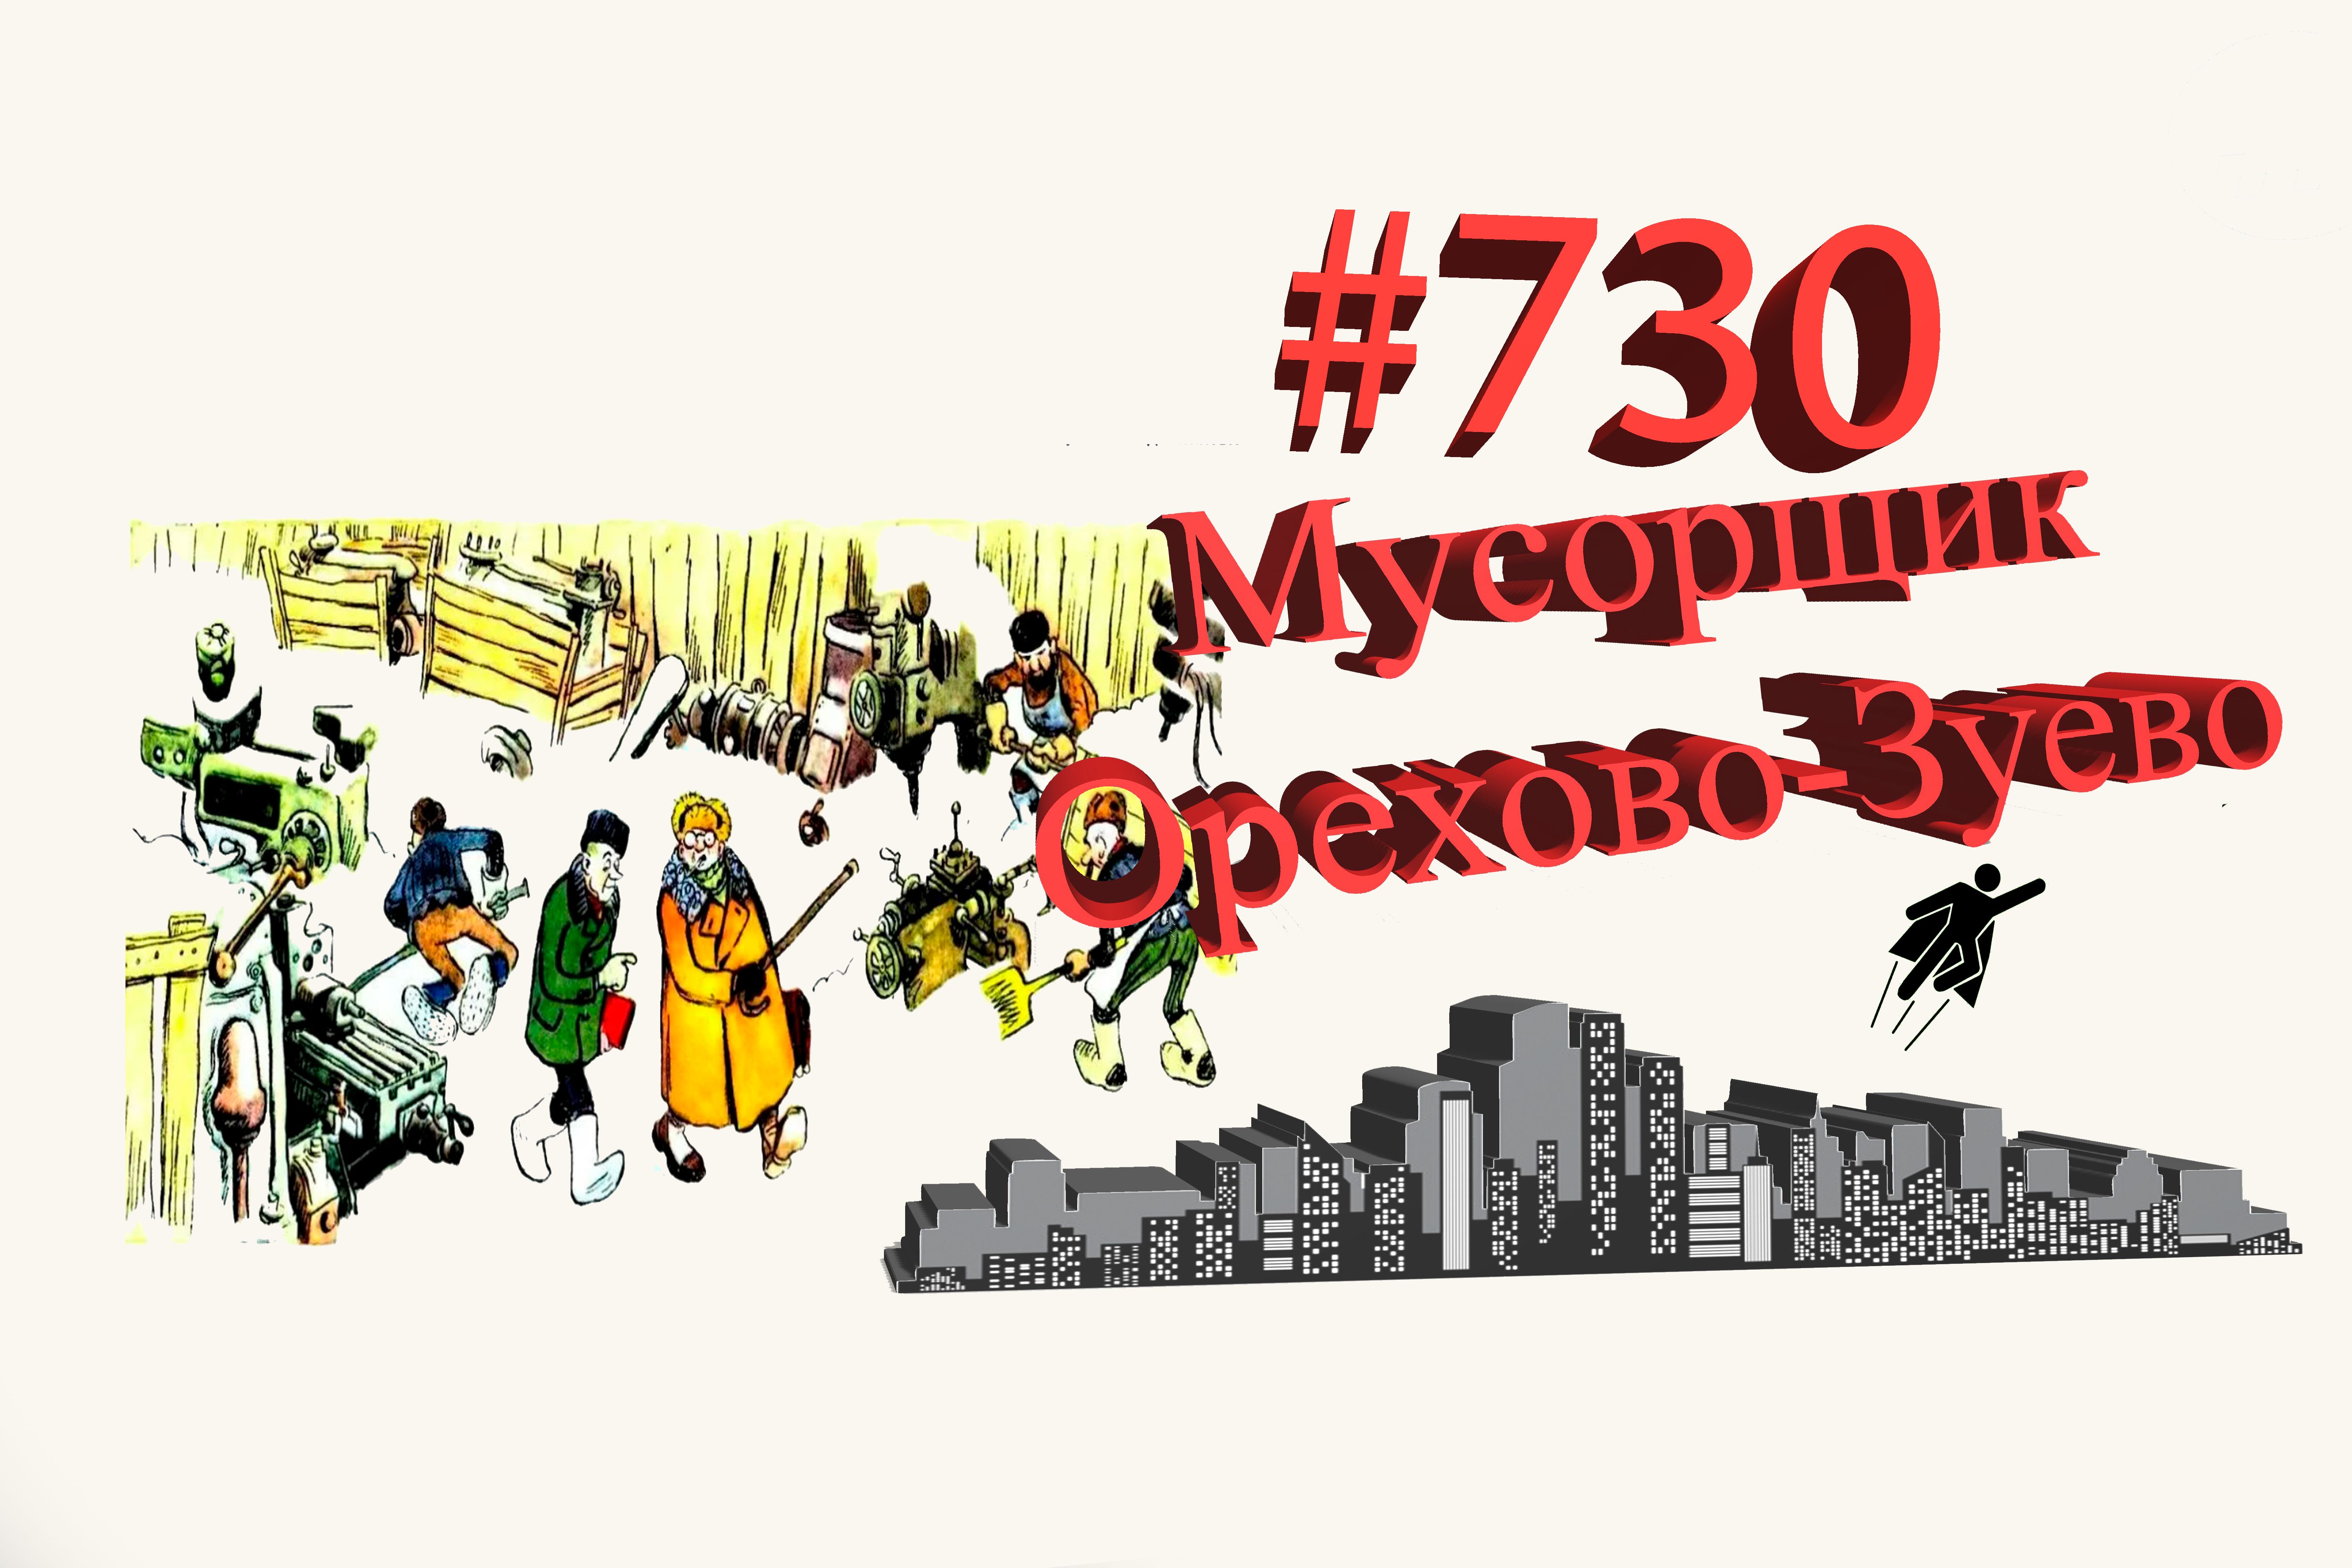 Подмосковье сегодня #730 Орехово-Зуево